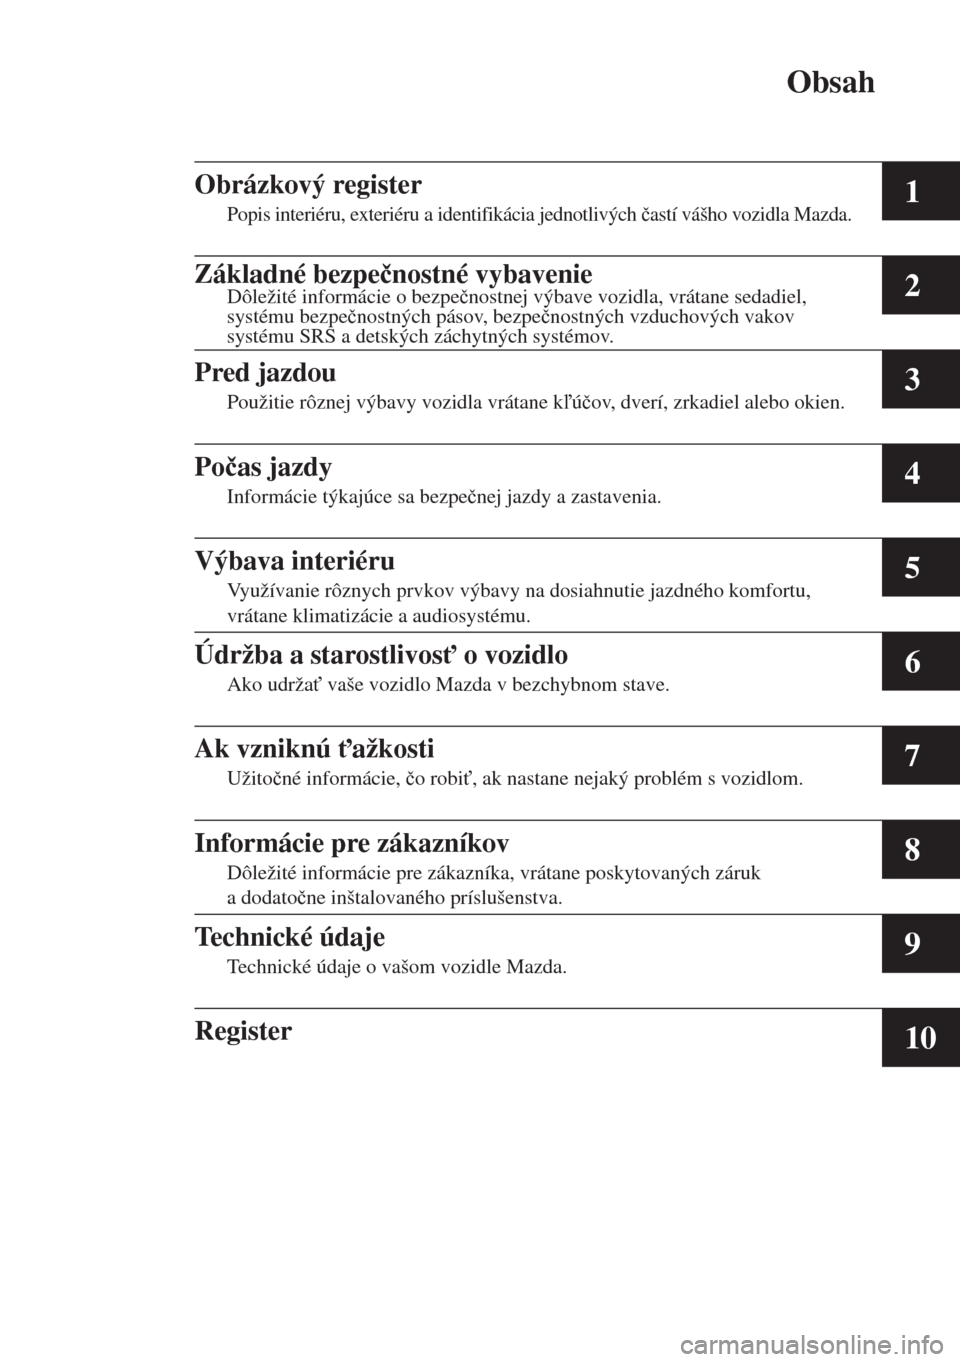 MAZDA MODEL CX-5 2015  Užívateľská príručka (in Slovak) Obsah
1
2
3
4
5
6
7
8
9
10
Obrázkový register
Popis interiéru, exteriéru a identifikácia jednotlivých �þastí vášho vozidla Mazda.
Základné bezpe�þnostné vybavenieDôležité informácie 